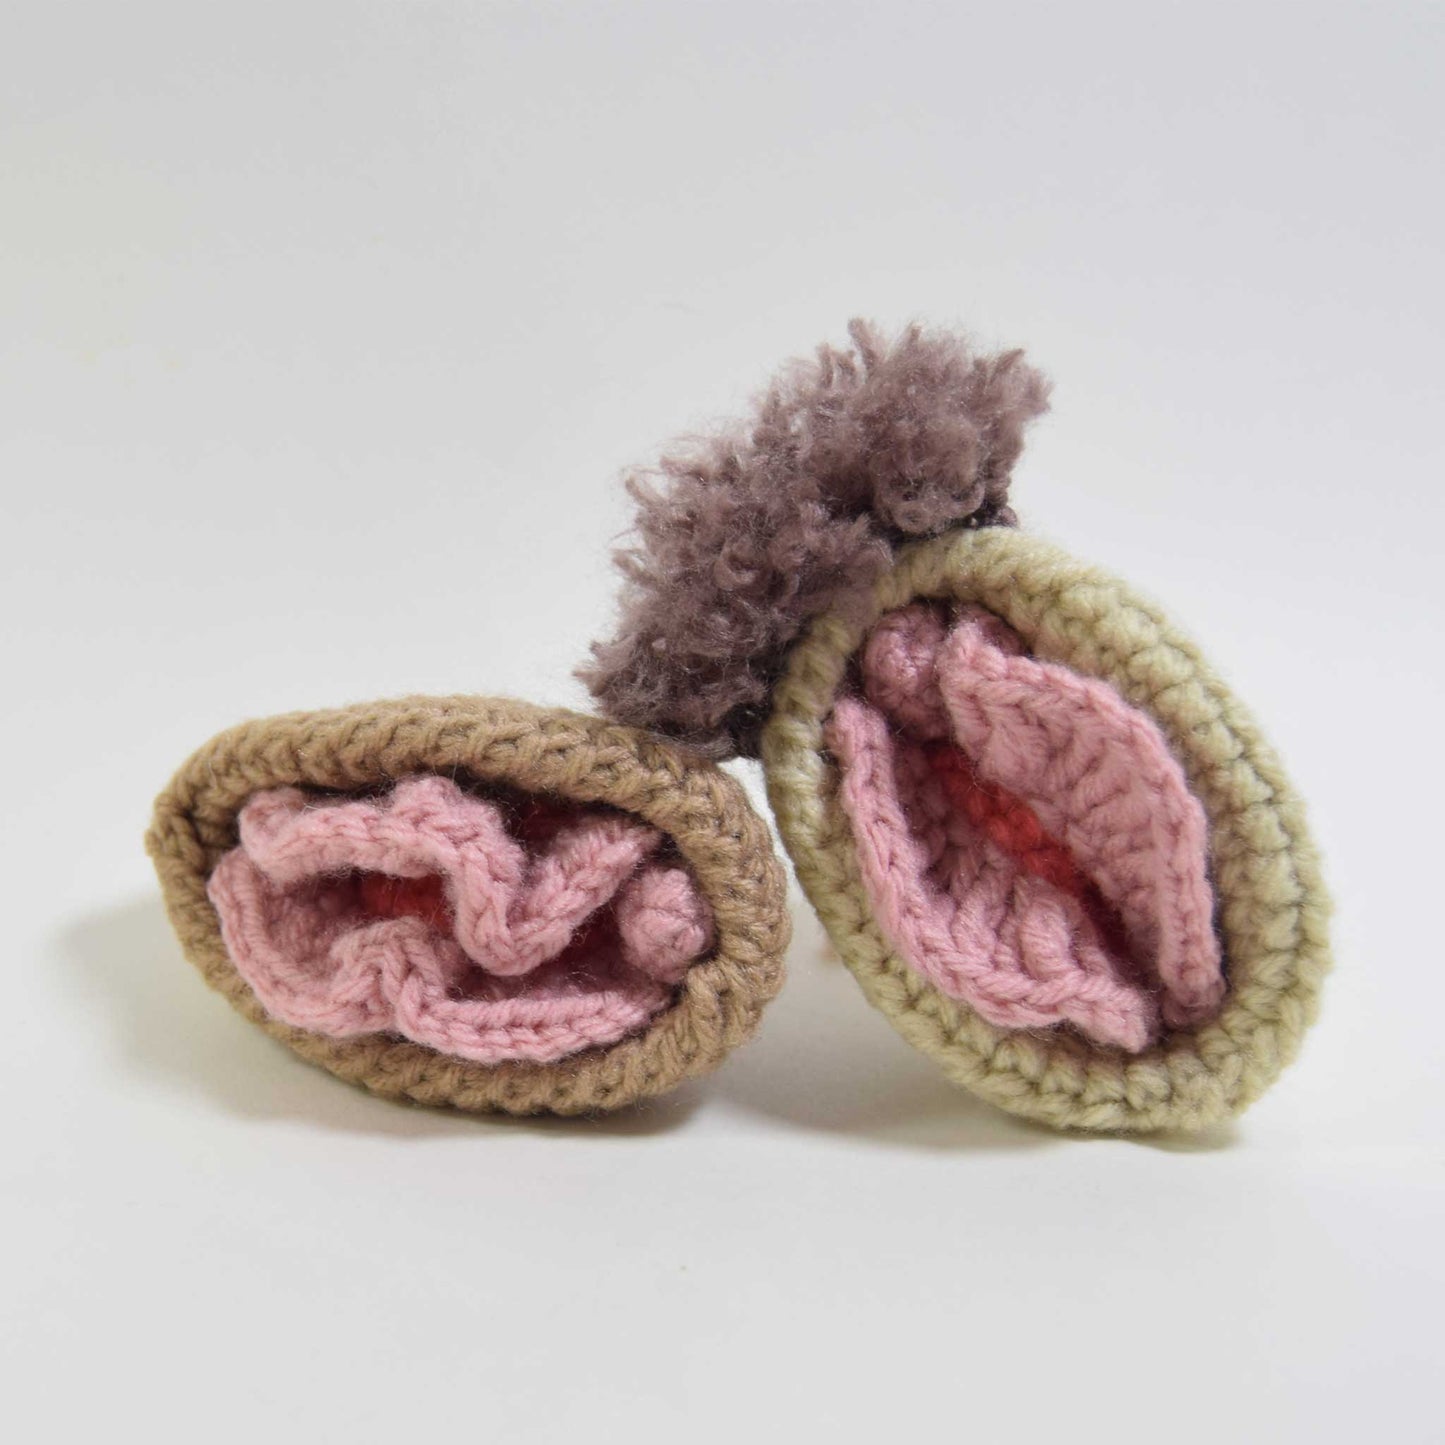 Crochet Va-Jay-Jay (Vulva) Pattern